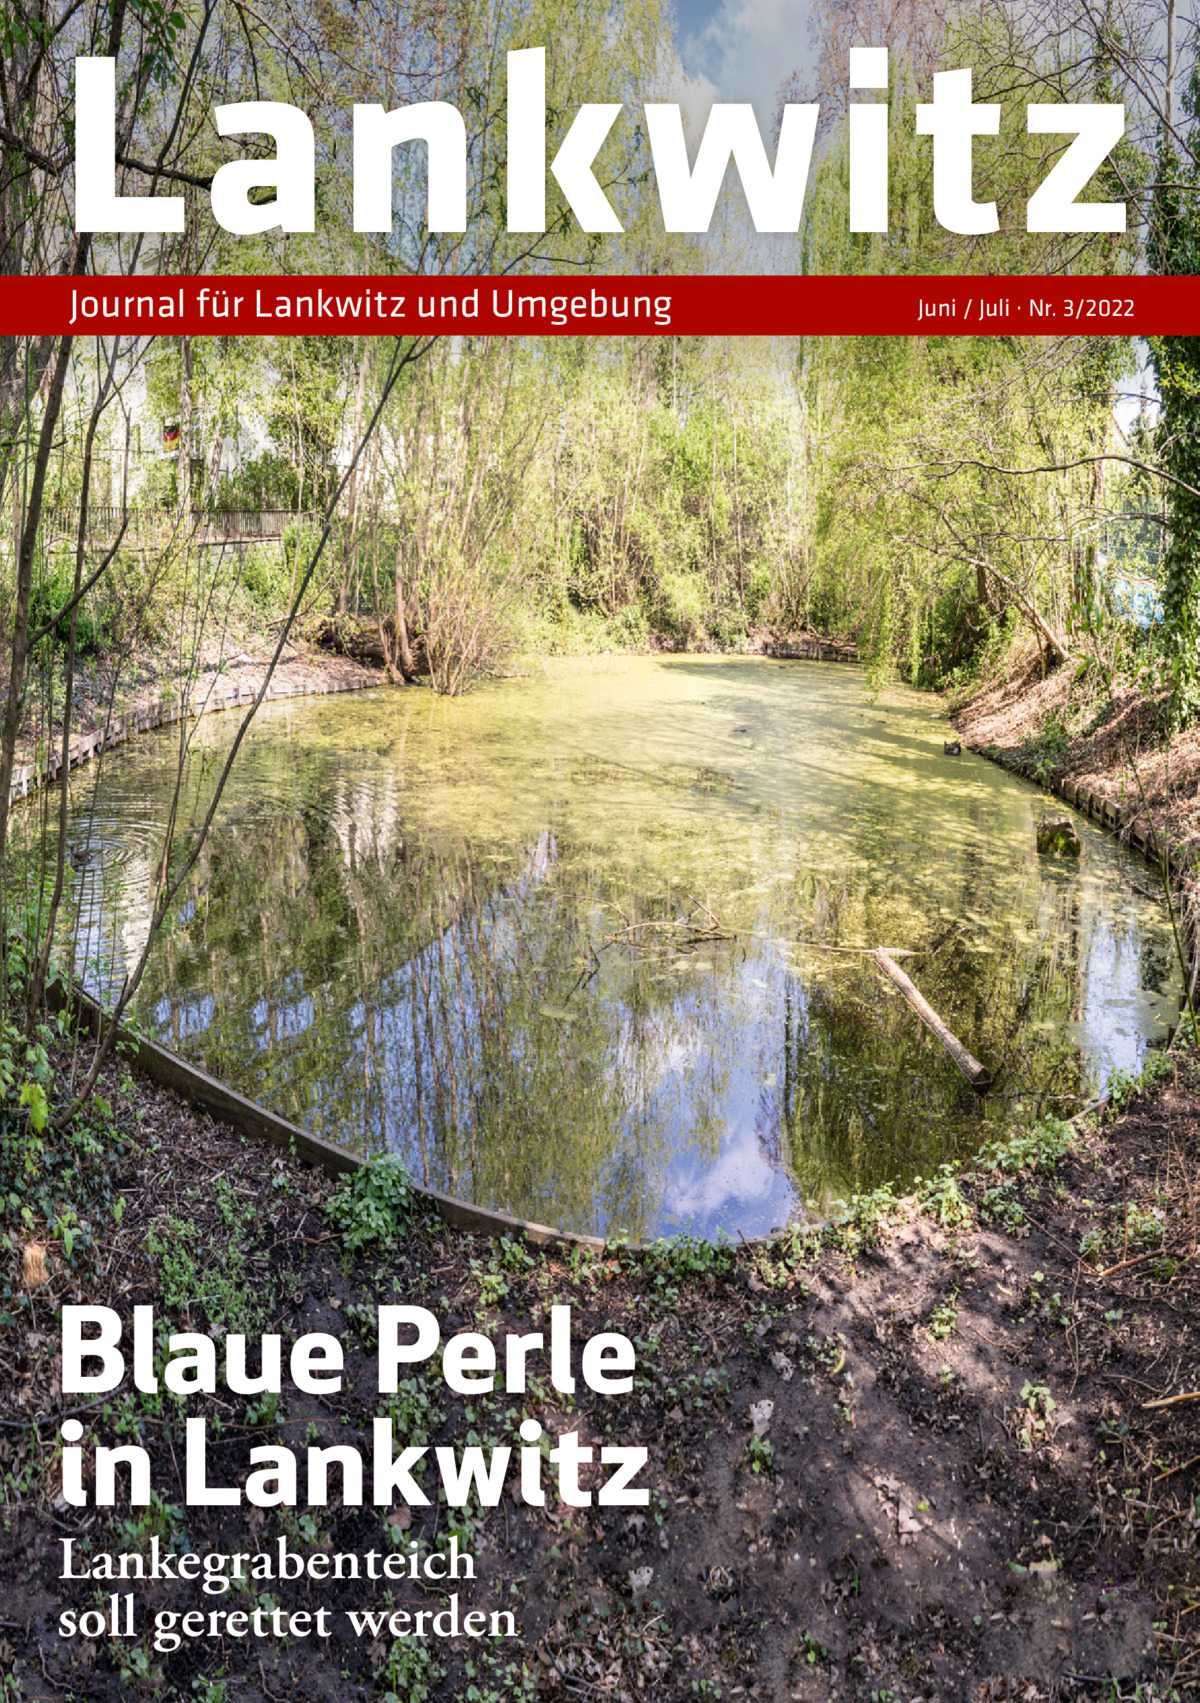 Lankwitz Journal für Lankwitz und Umgebung  Blaue Perle in Lankwitz Lankegrabenteich soll gerettet werden  Juni / Juli · Nr. 3/2022